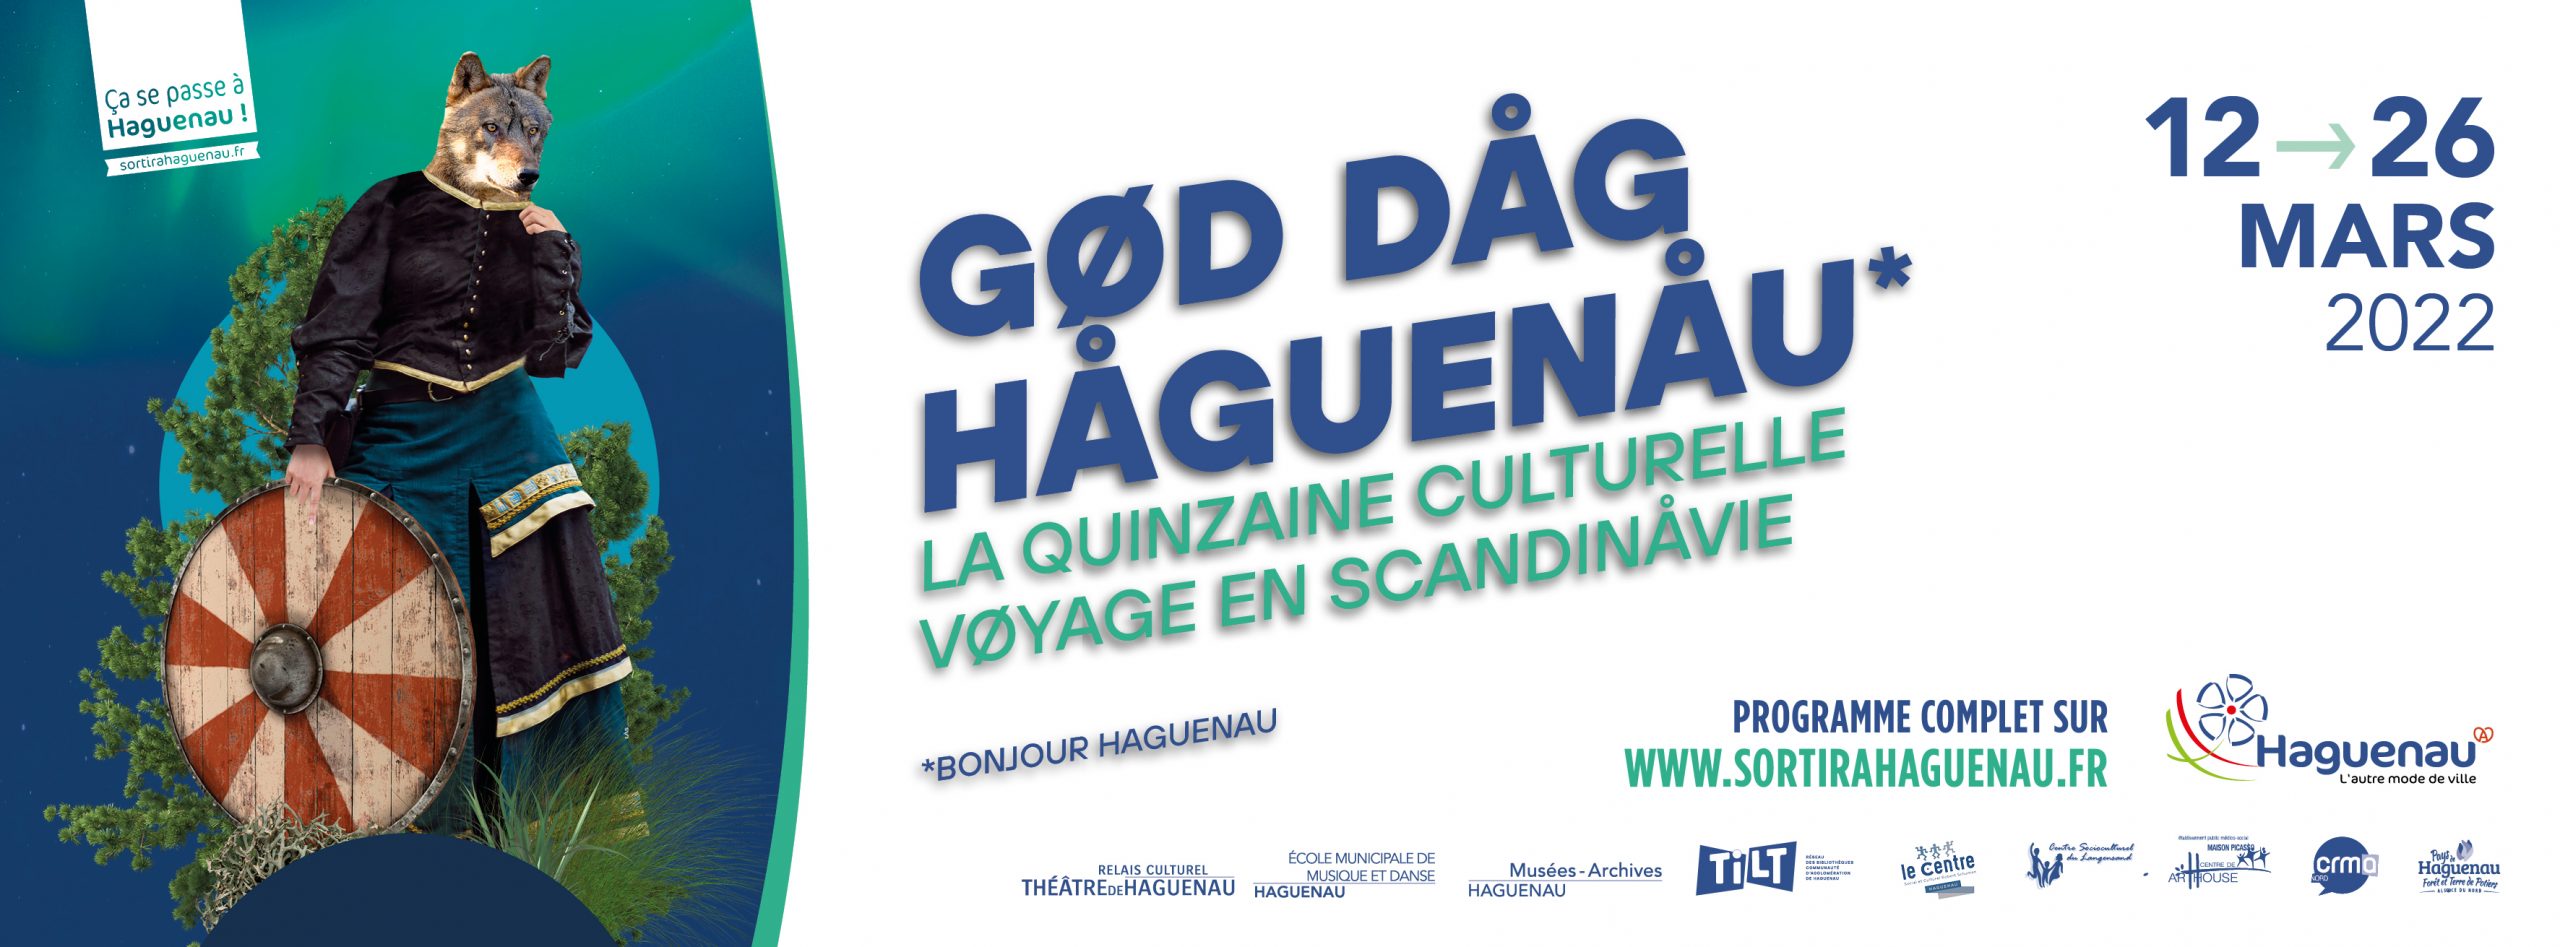 GØD DÅG HÅGUENÅU - La Quinzaine culturelle voyage en Scandinavie